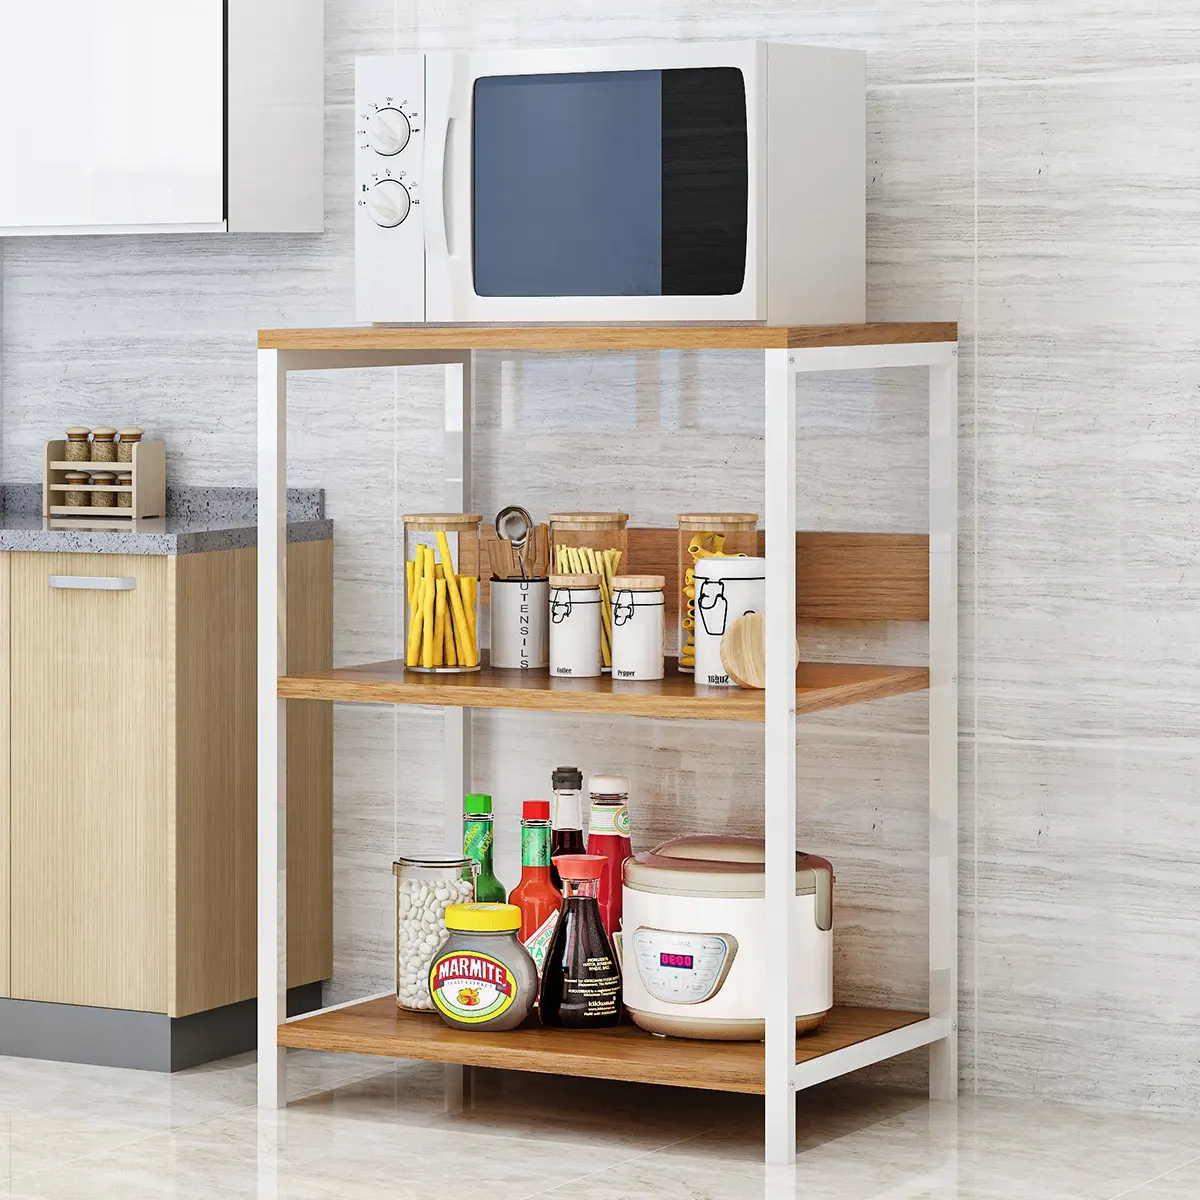 STS02-4 3-Tier Steel Wood Microwave Oven Stand Home Kitchen Storage Shelf Kitchen Organizer Rack